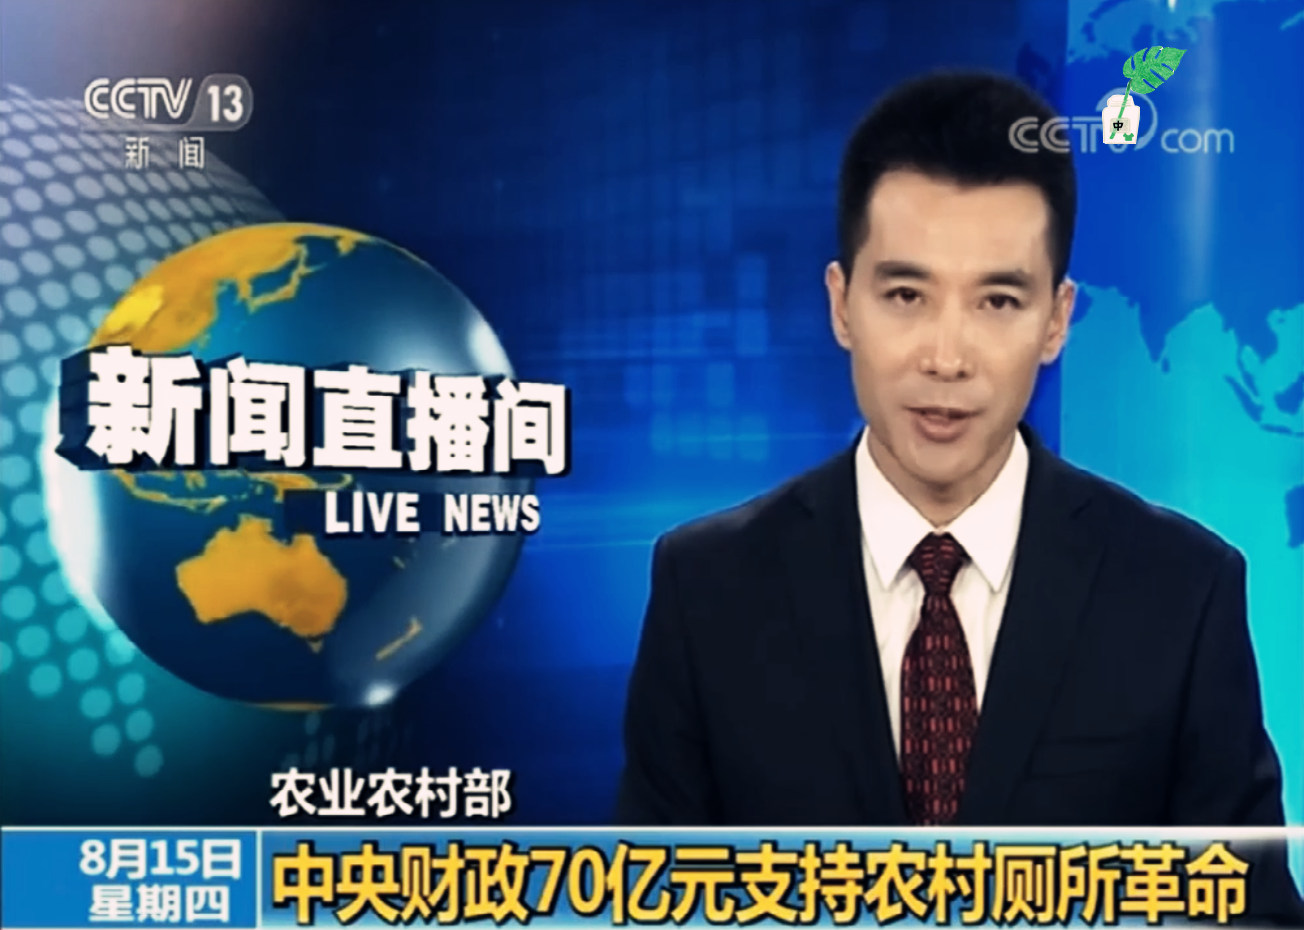 CCTV NEWS.jpg